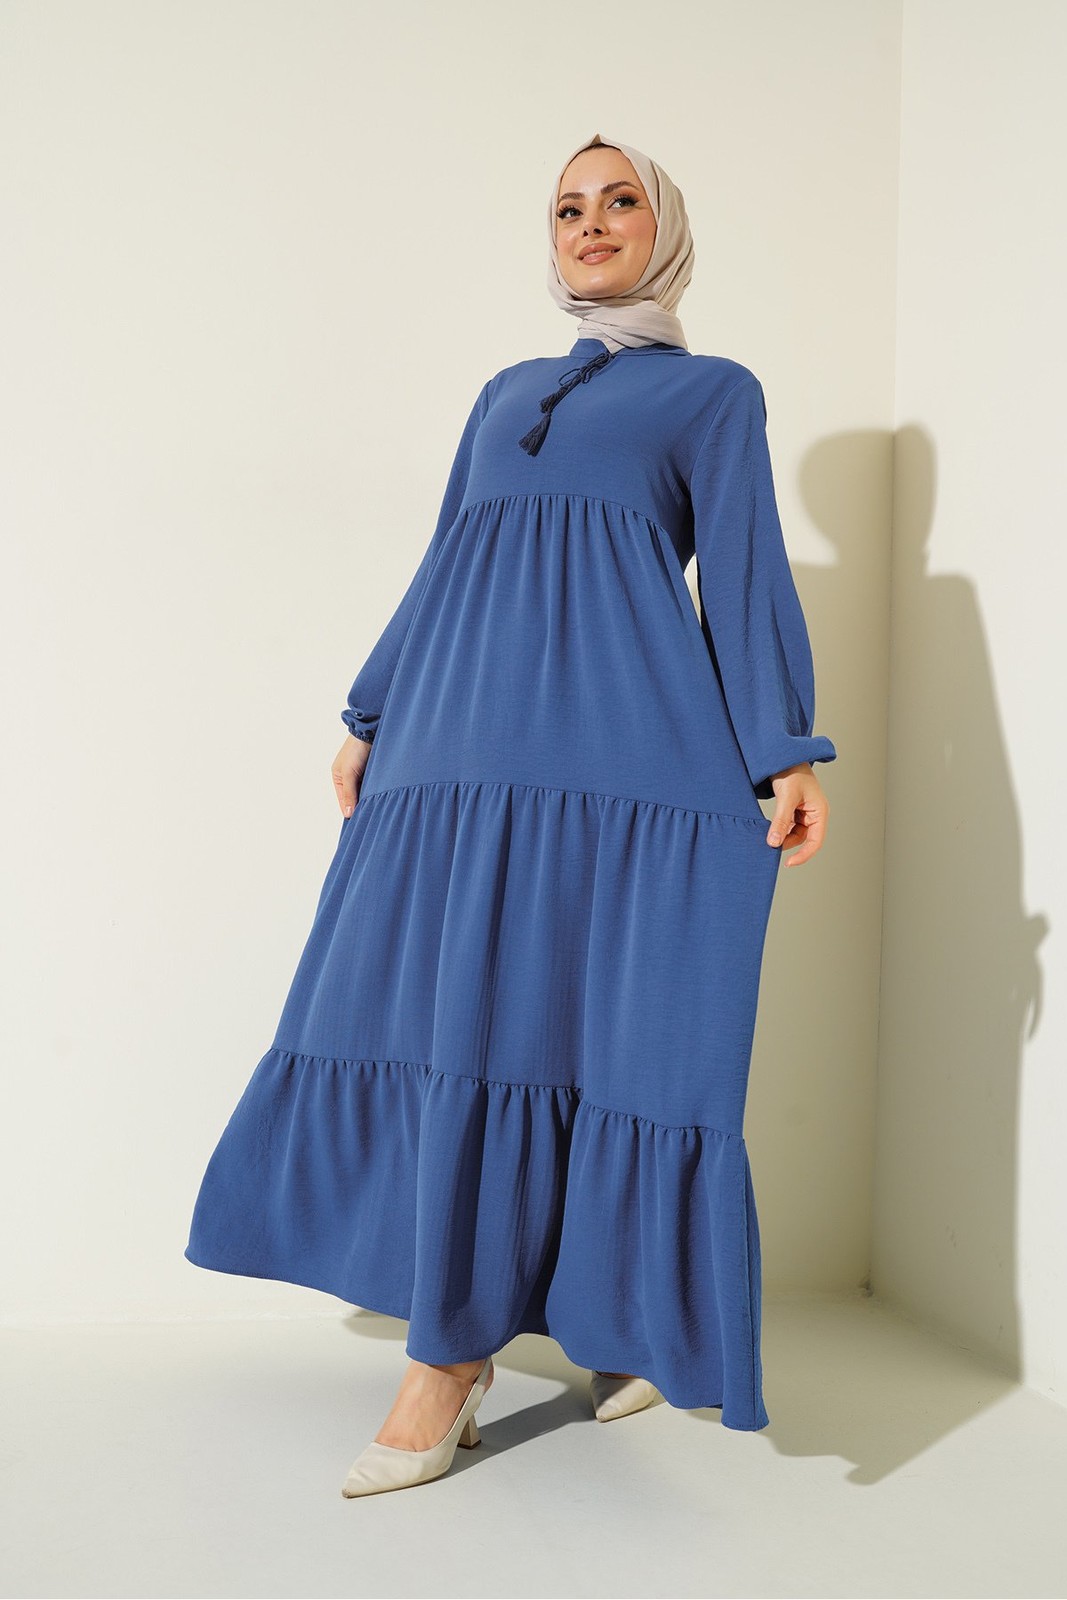 Bigdart 1627 Collar Lace-Up Hijab Dress - C.Saks